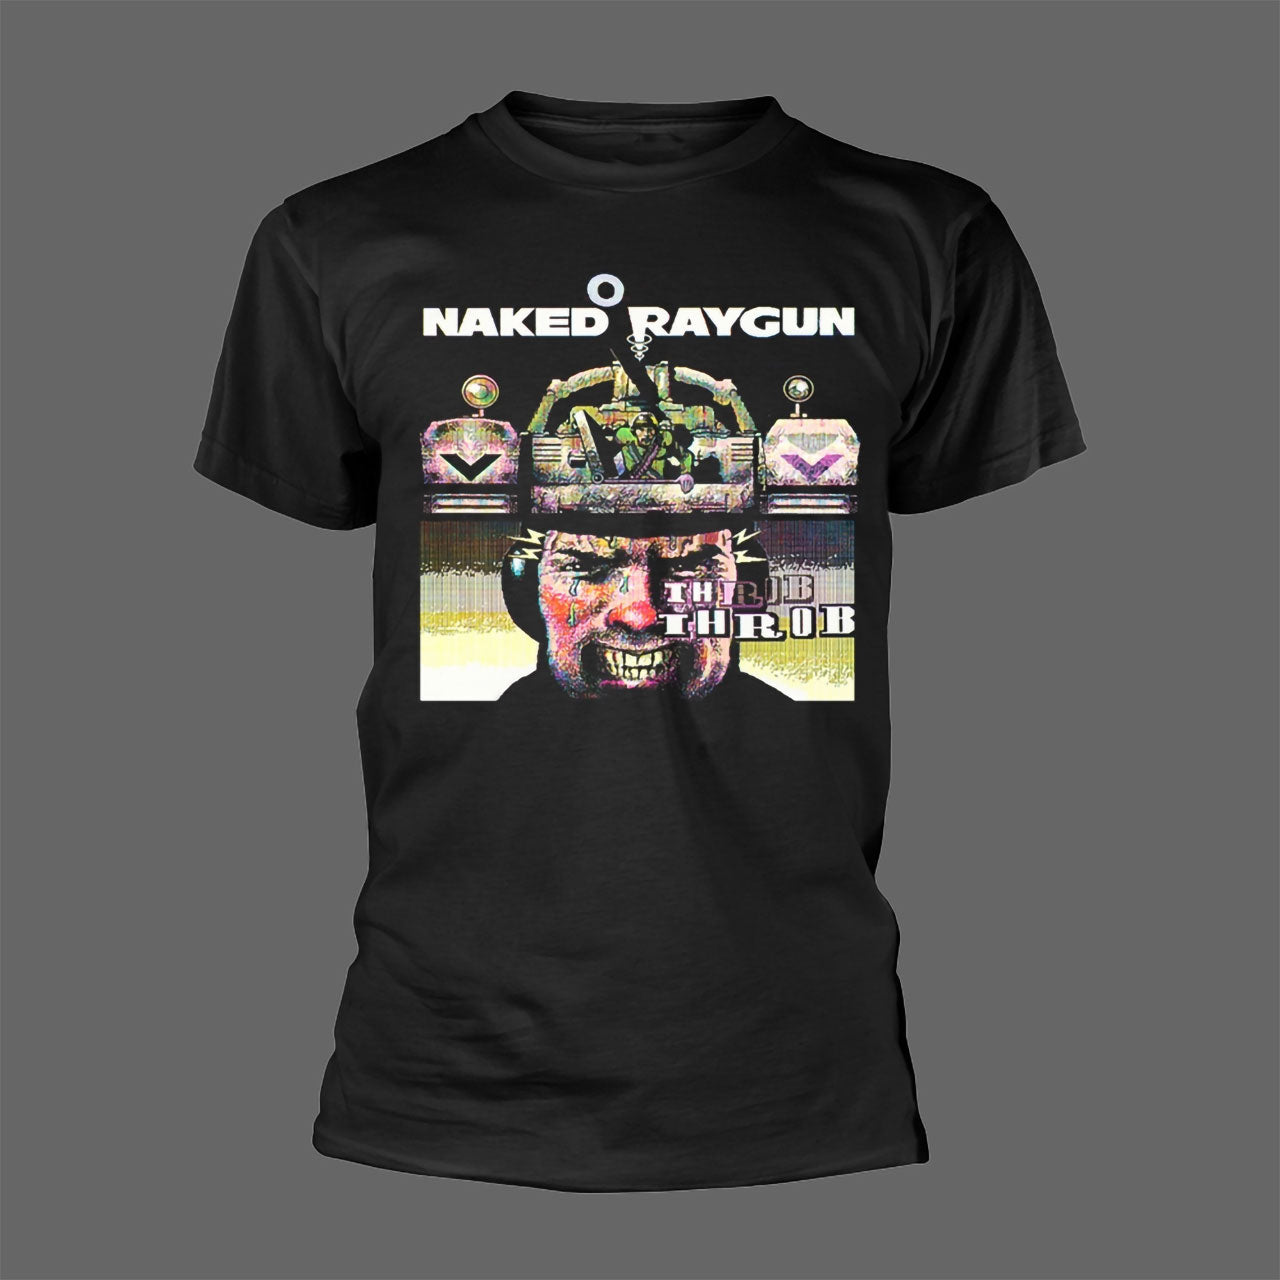 Naked Raygun - Throb Throb (T-Shirt)